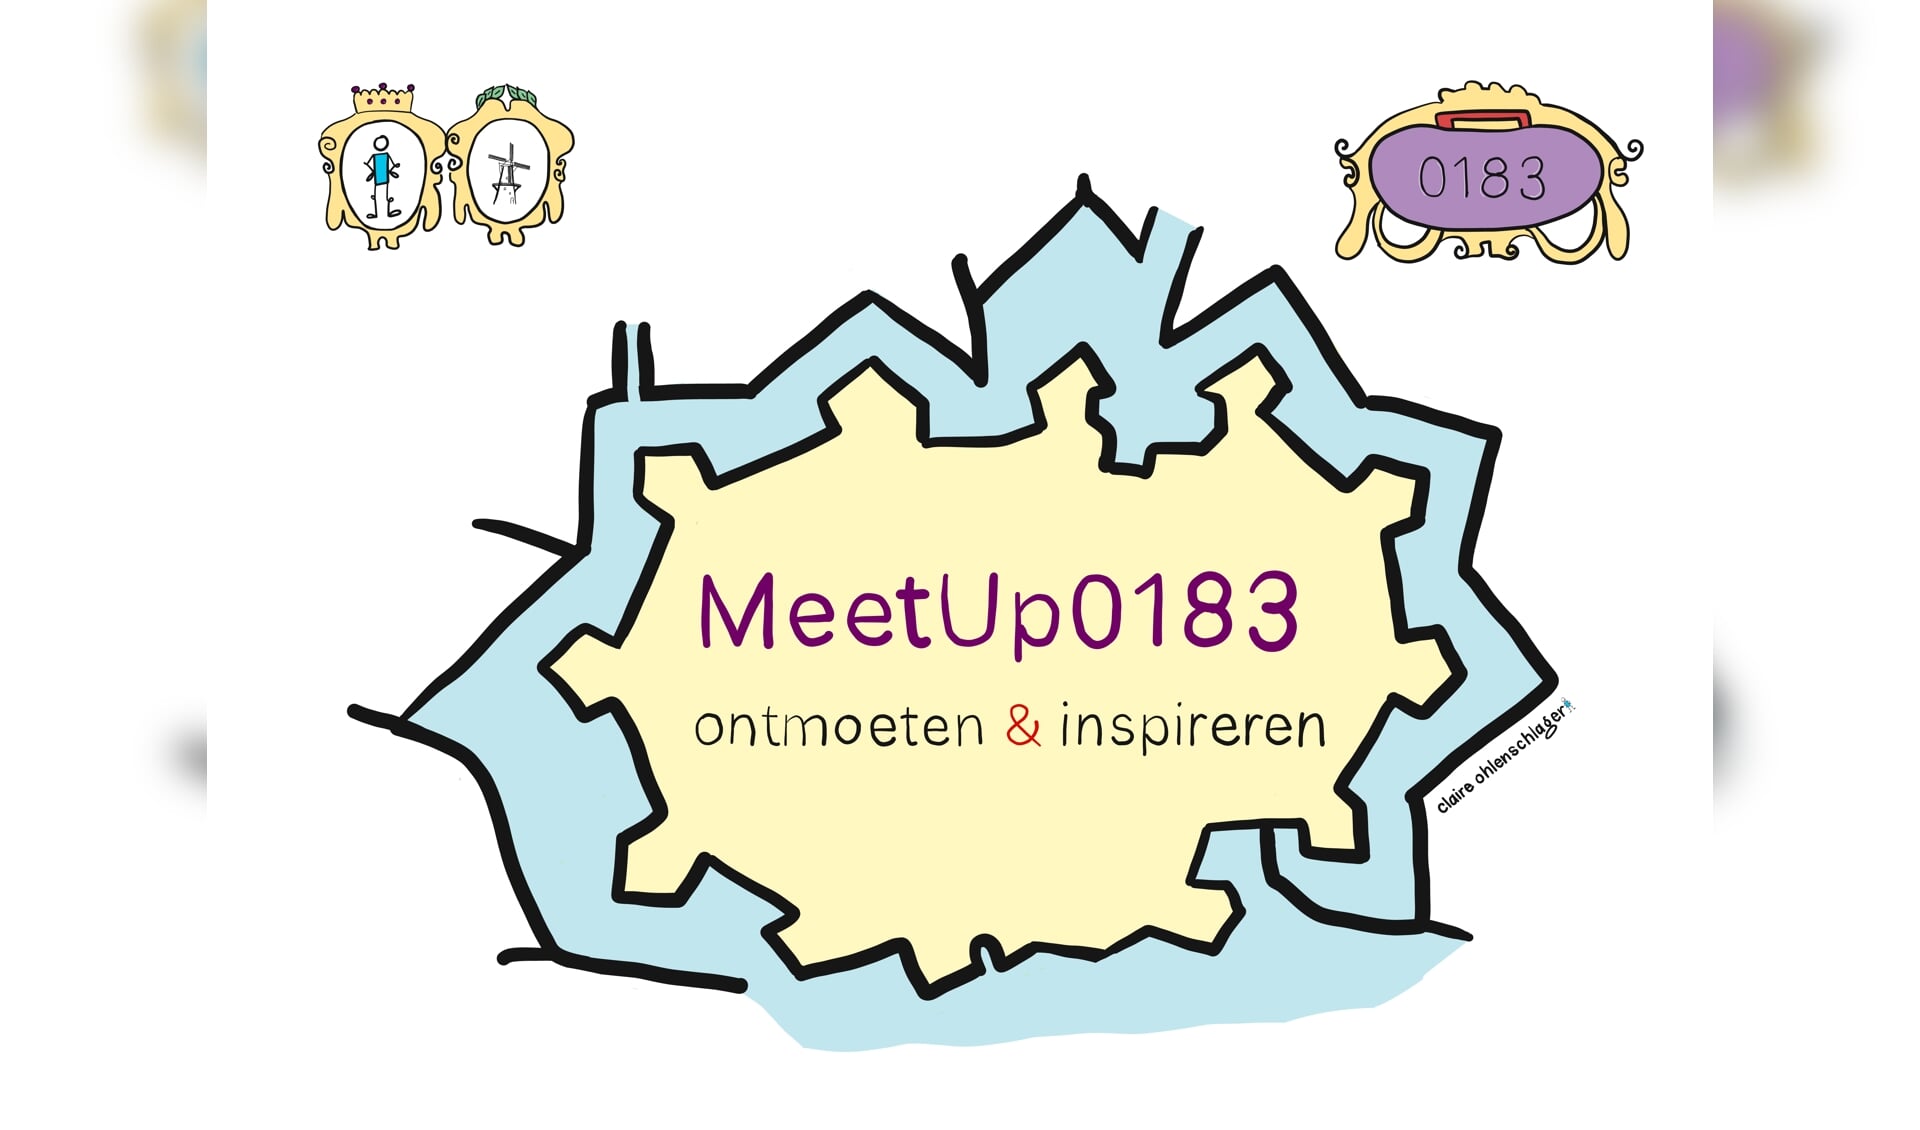 Meet Up 0183 is een ontmoeting van po, vo, mbo en hbo/universiteit